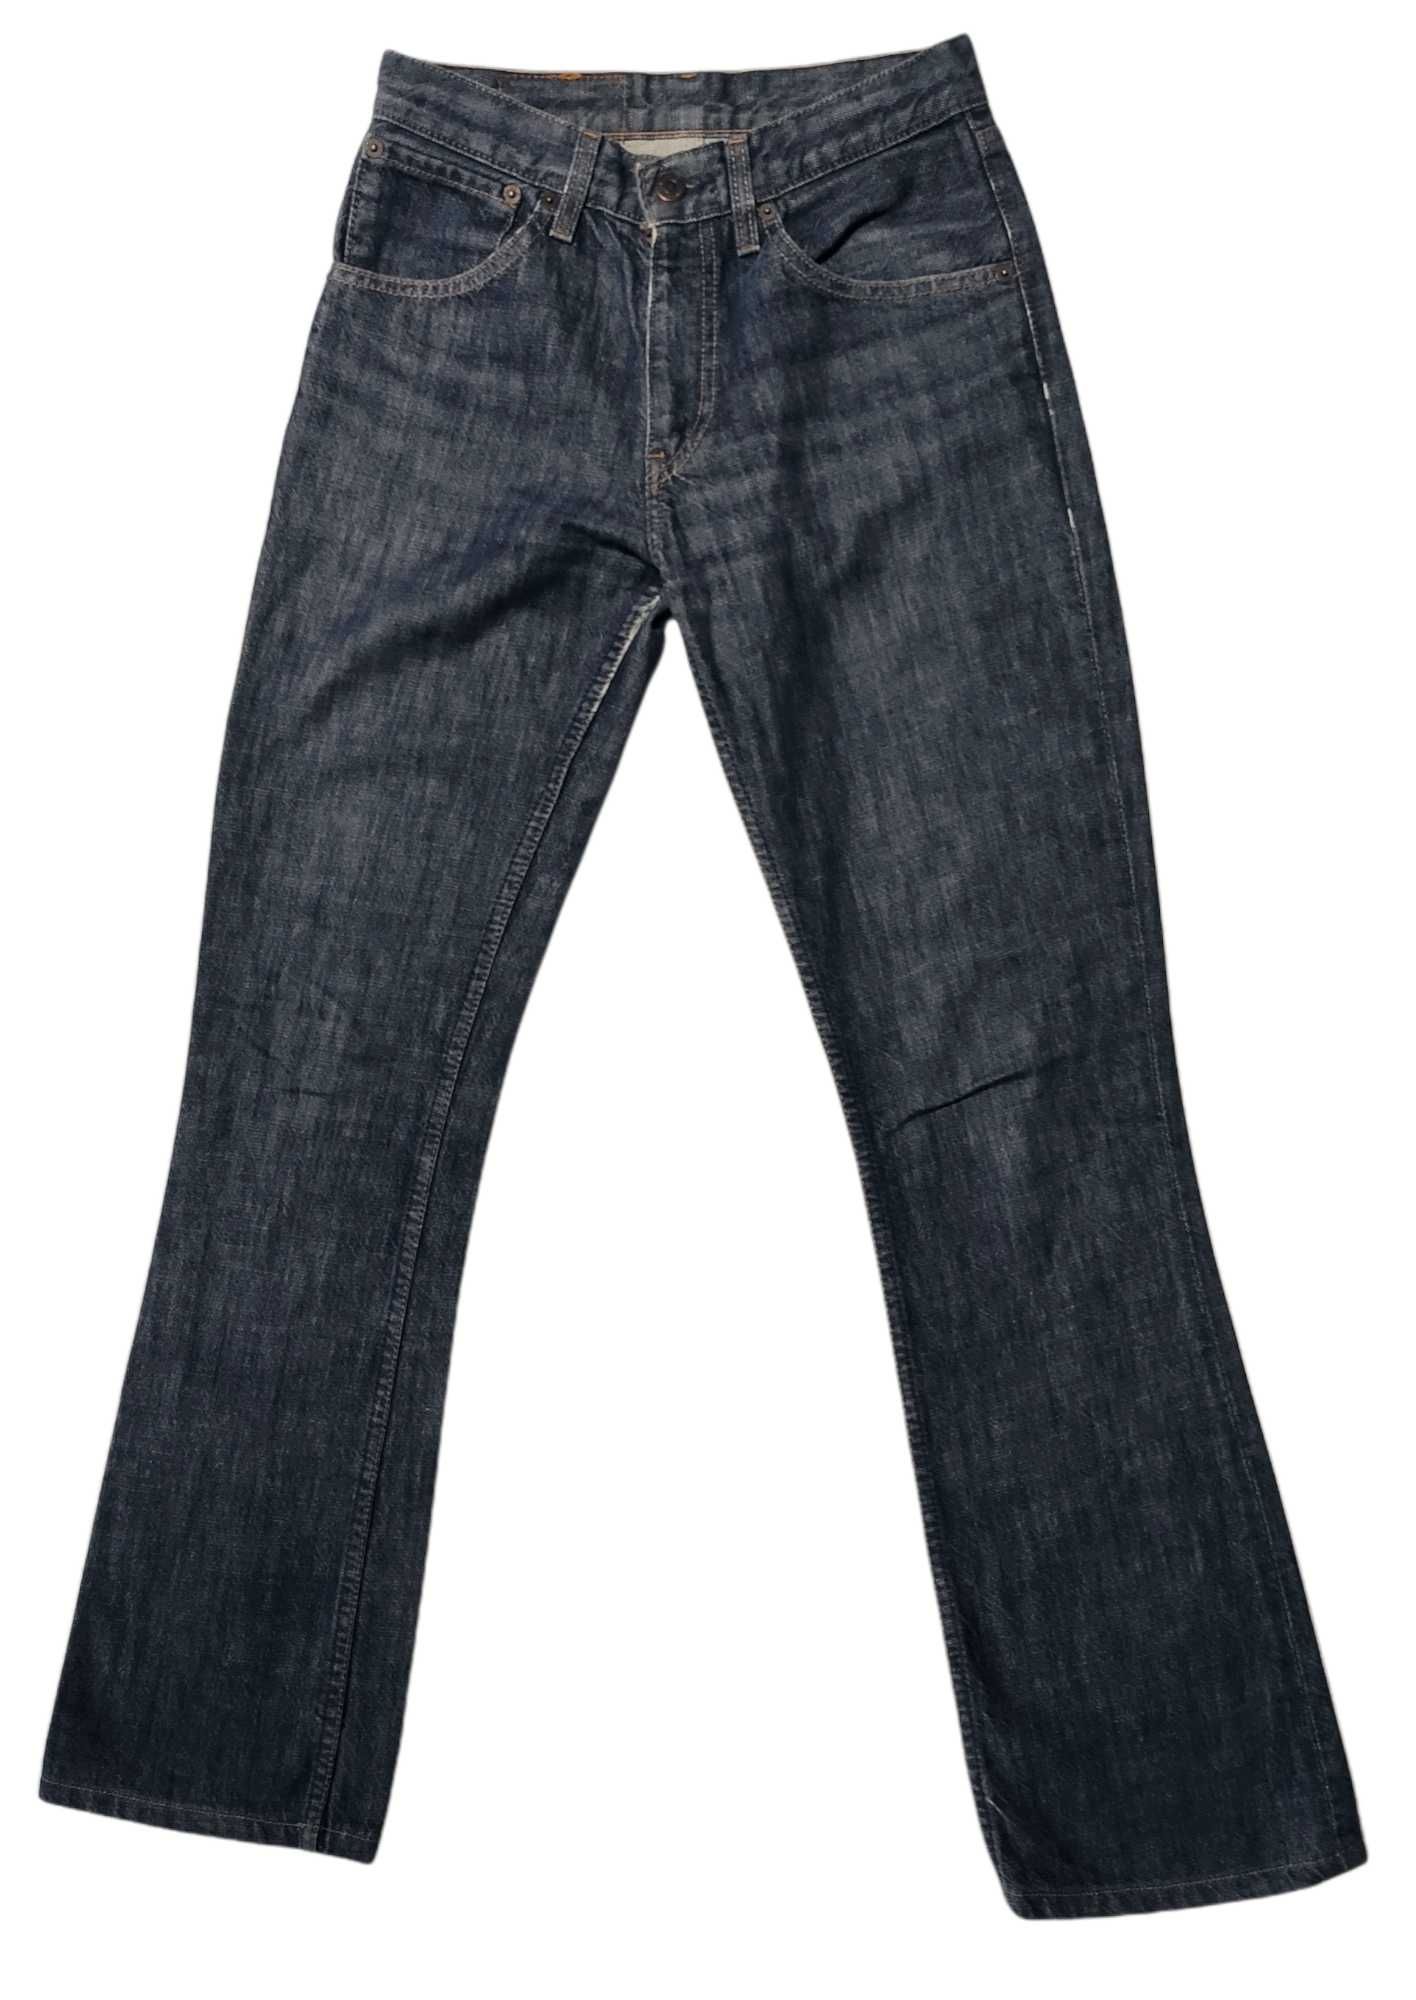 Levi's 525 04 spodnie jeansowe W28/L32, stan dobry długość